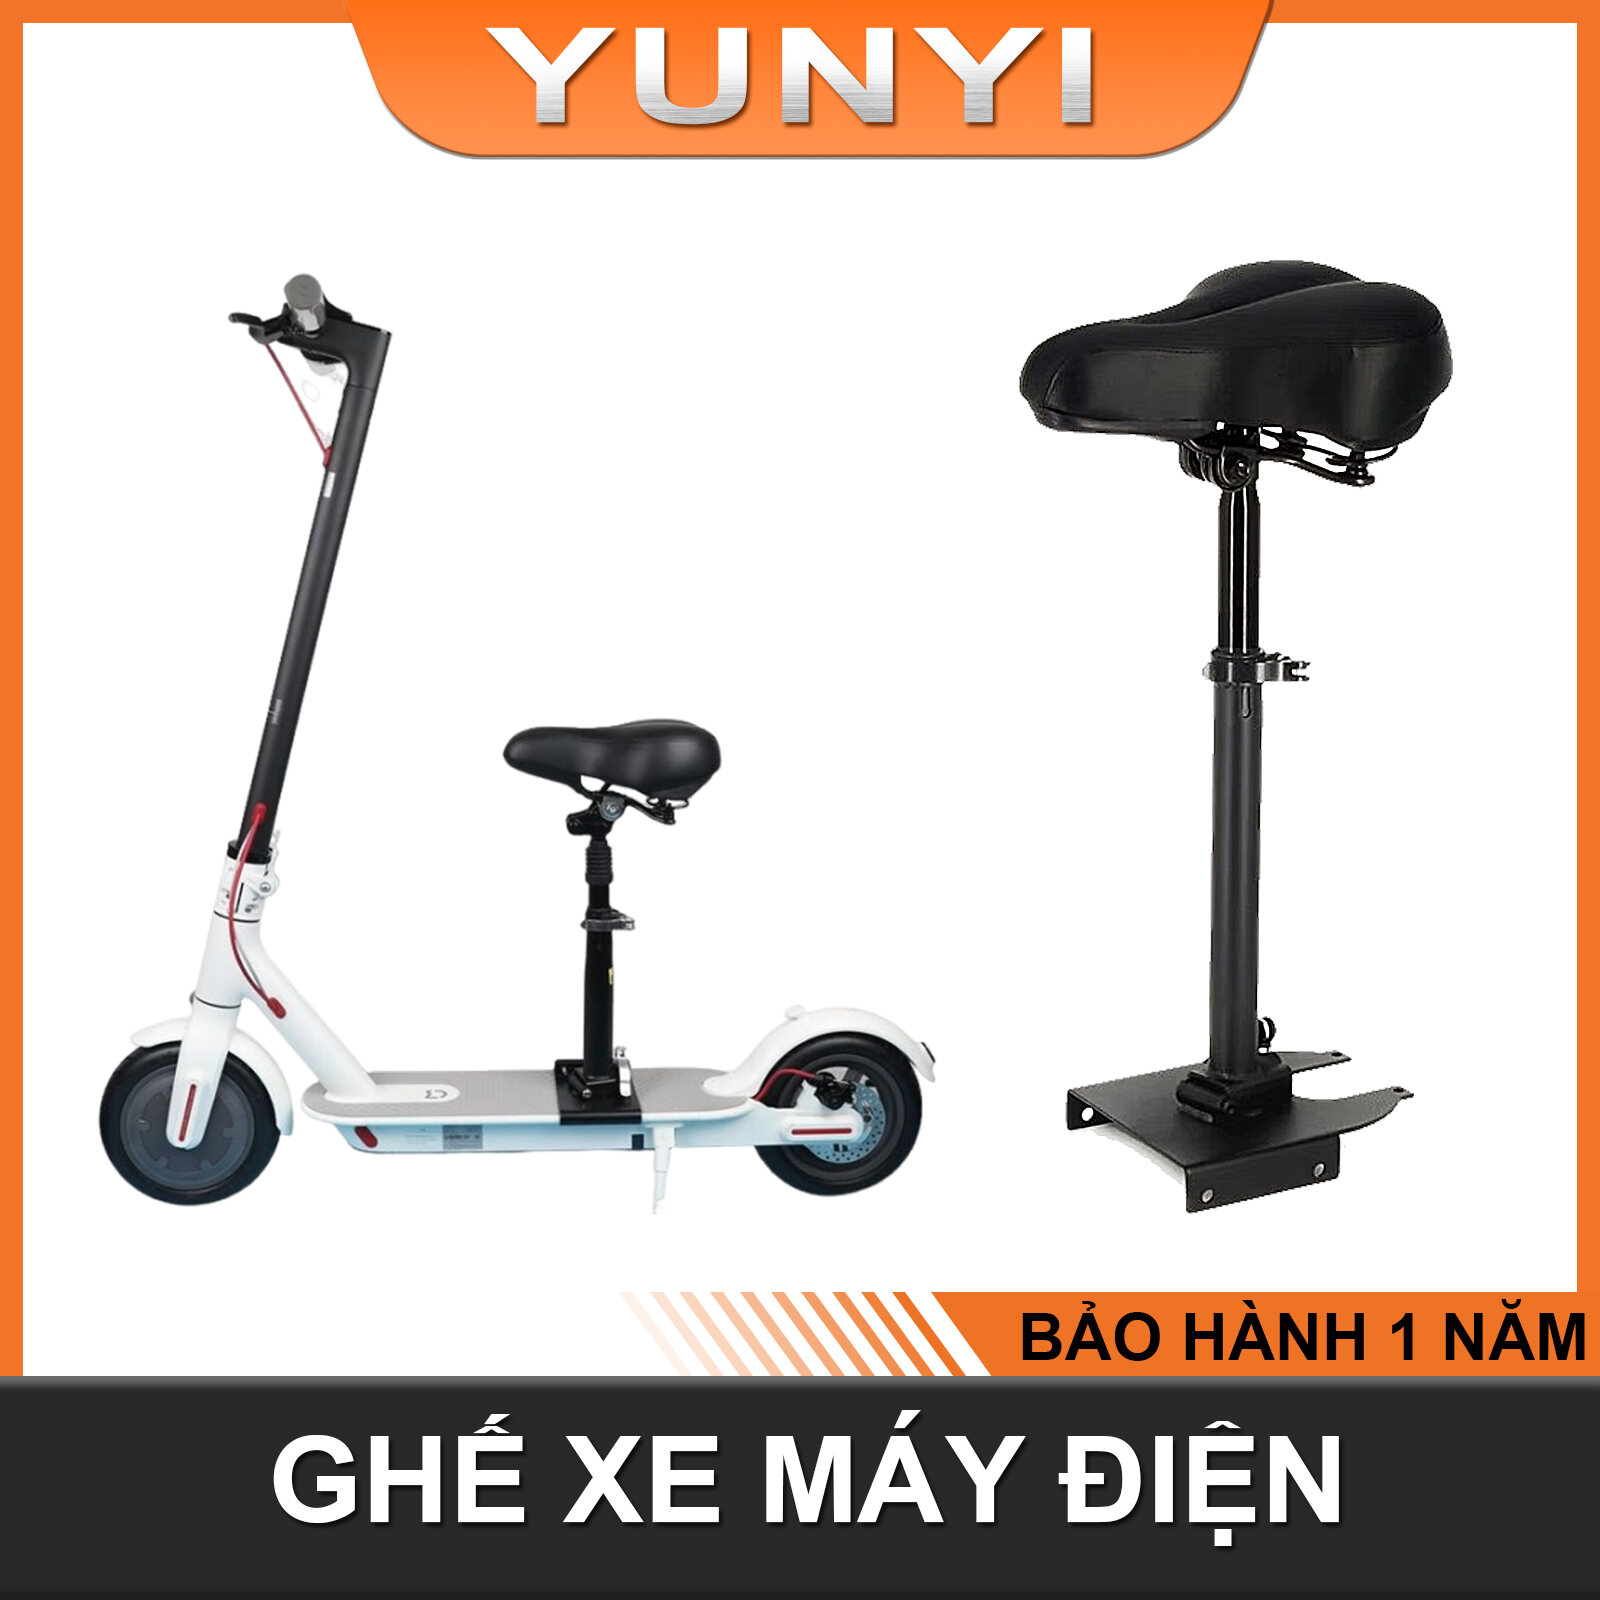 Yên xe đạp xe điện không đục lỗ với khung gắn yên xe đạp thể thao thích hợp cho cùng loại xe điện của Xiaomi